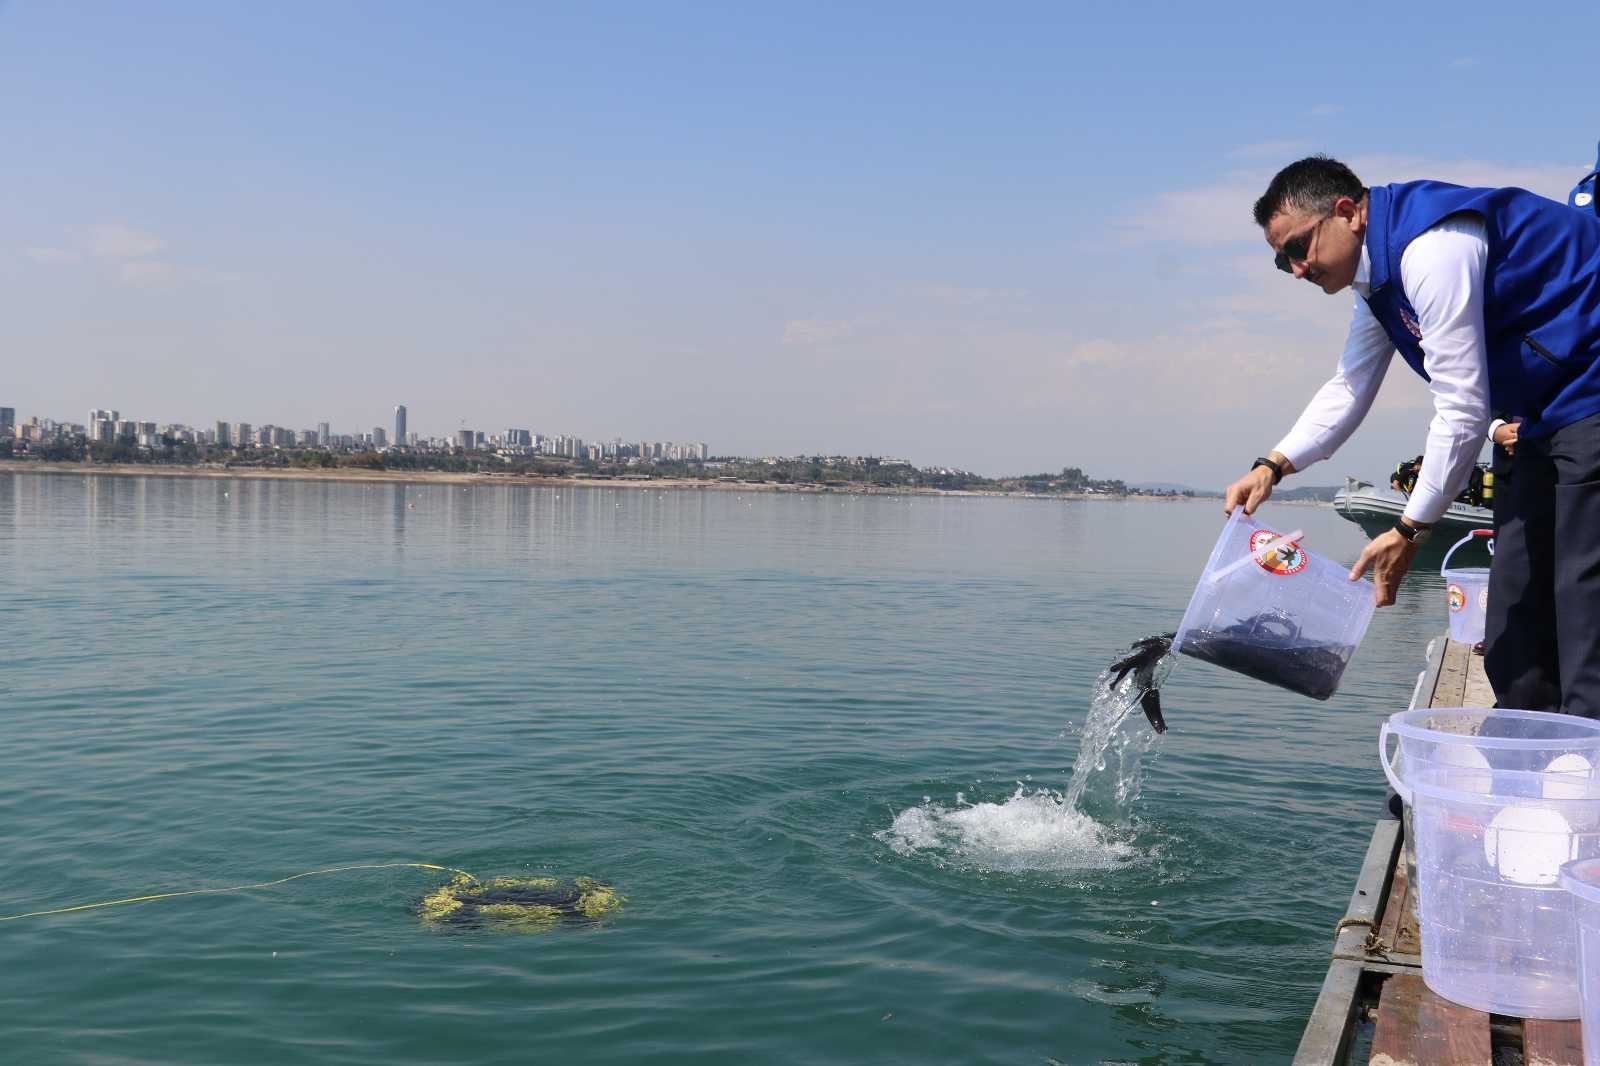 Bakan Pakdemirli Adana’da göle balık bıraktı #adana